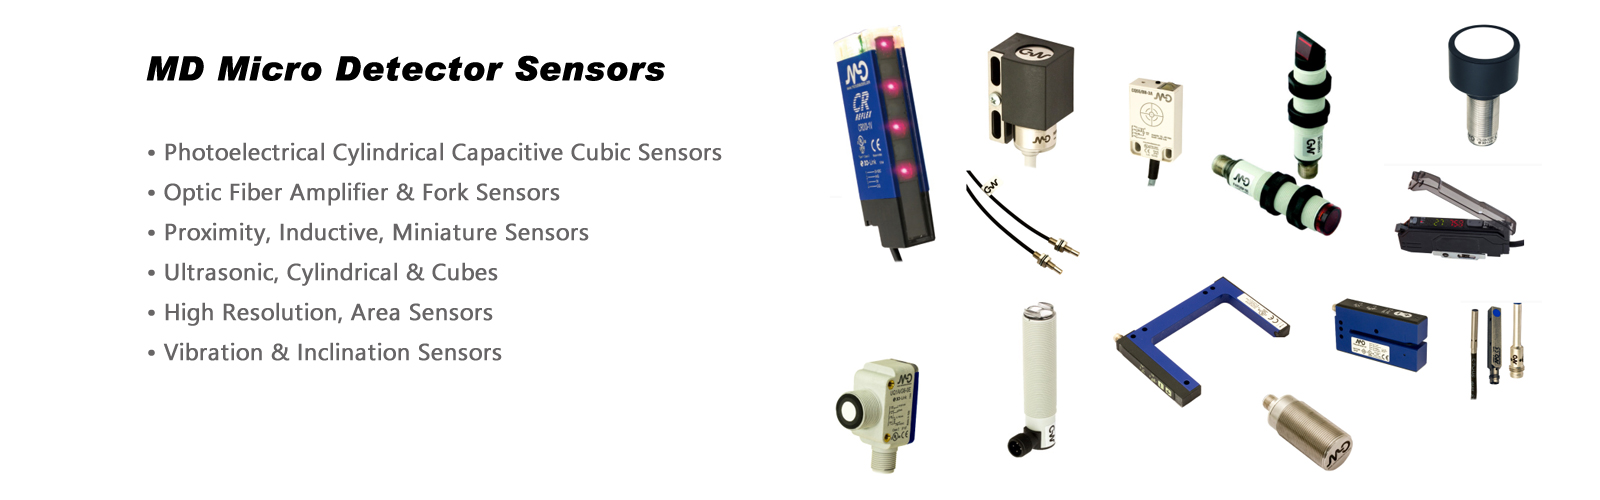 MD Micro Detector Sensors